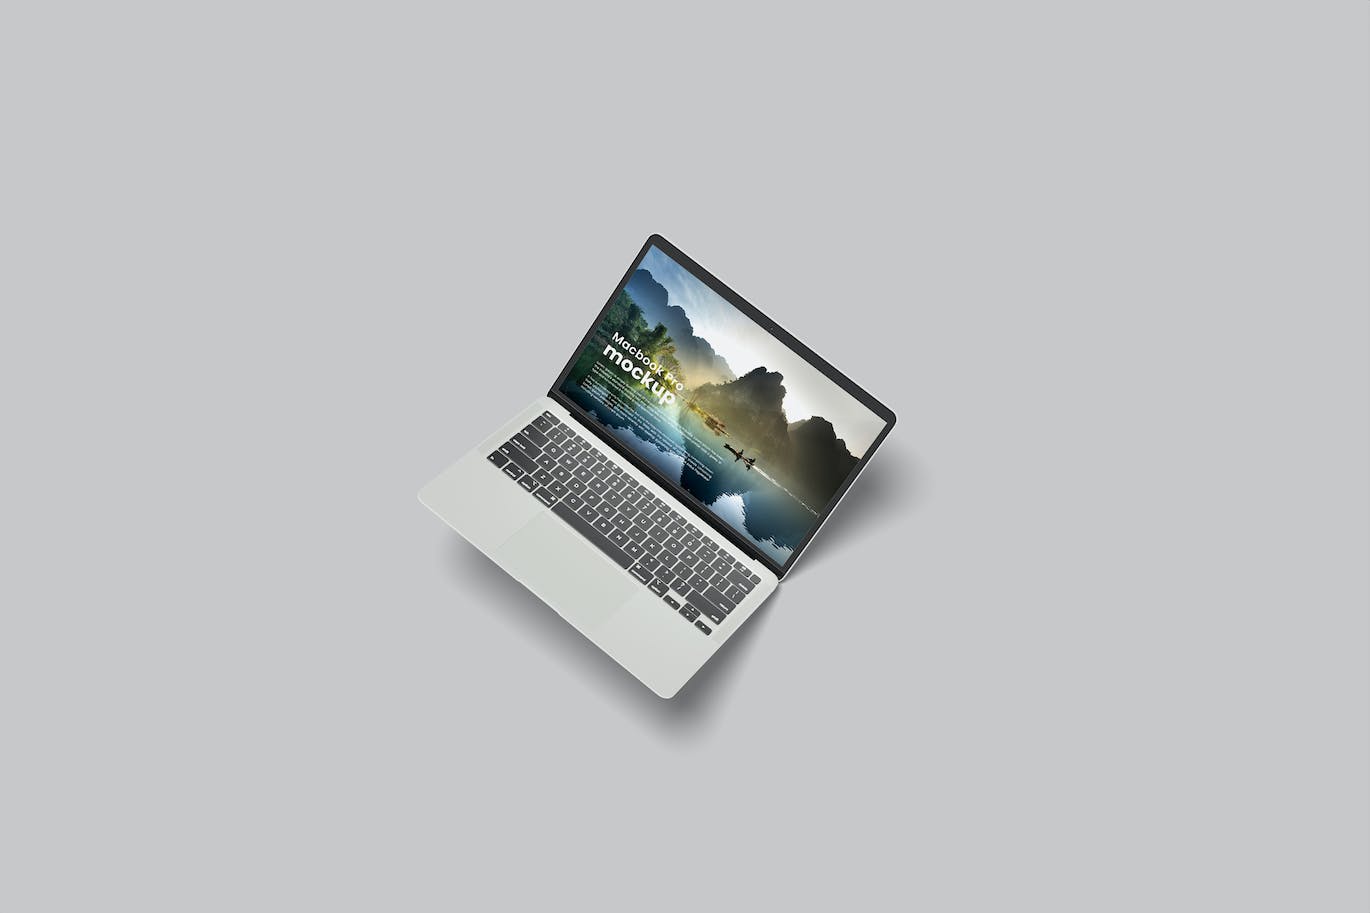 MacBook苹果电脑样机 (PSD)